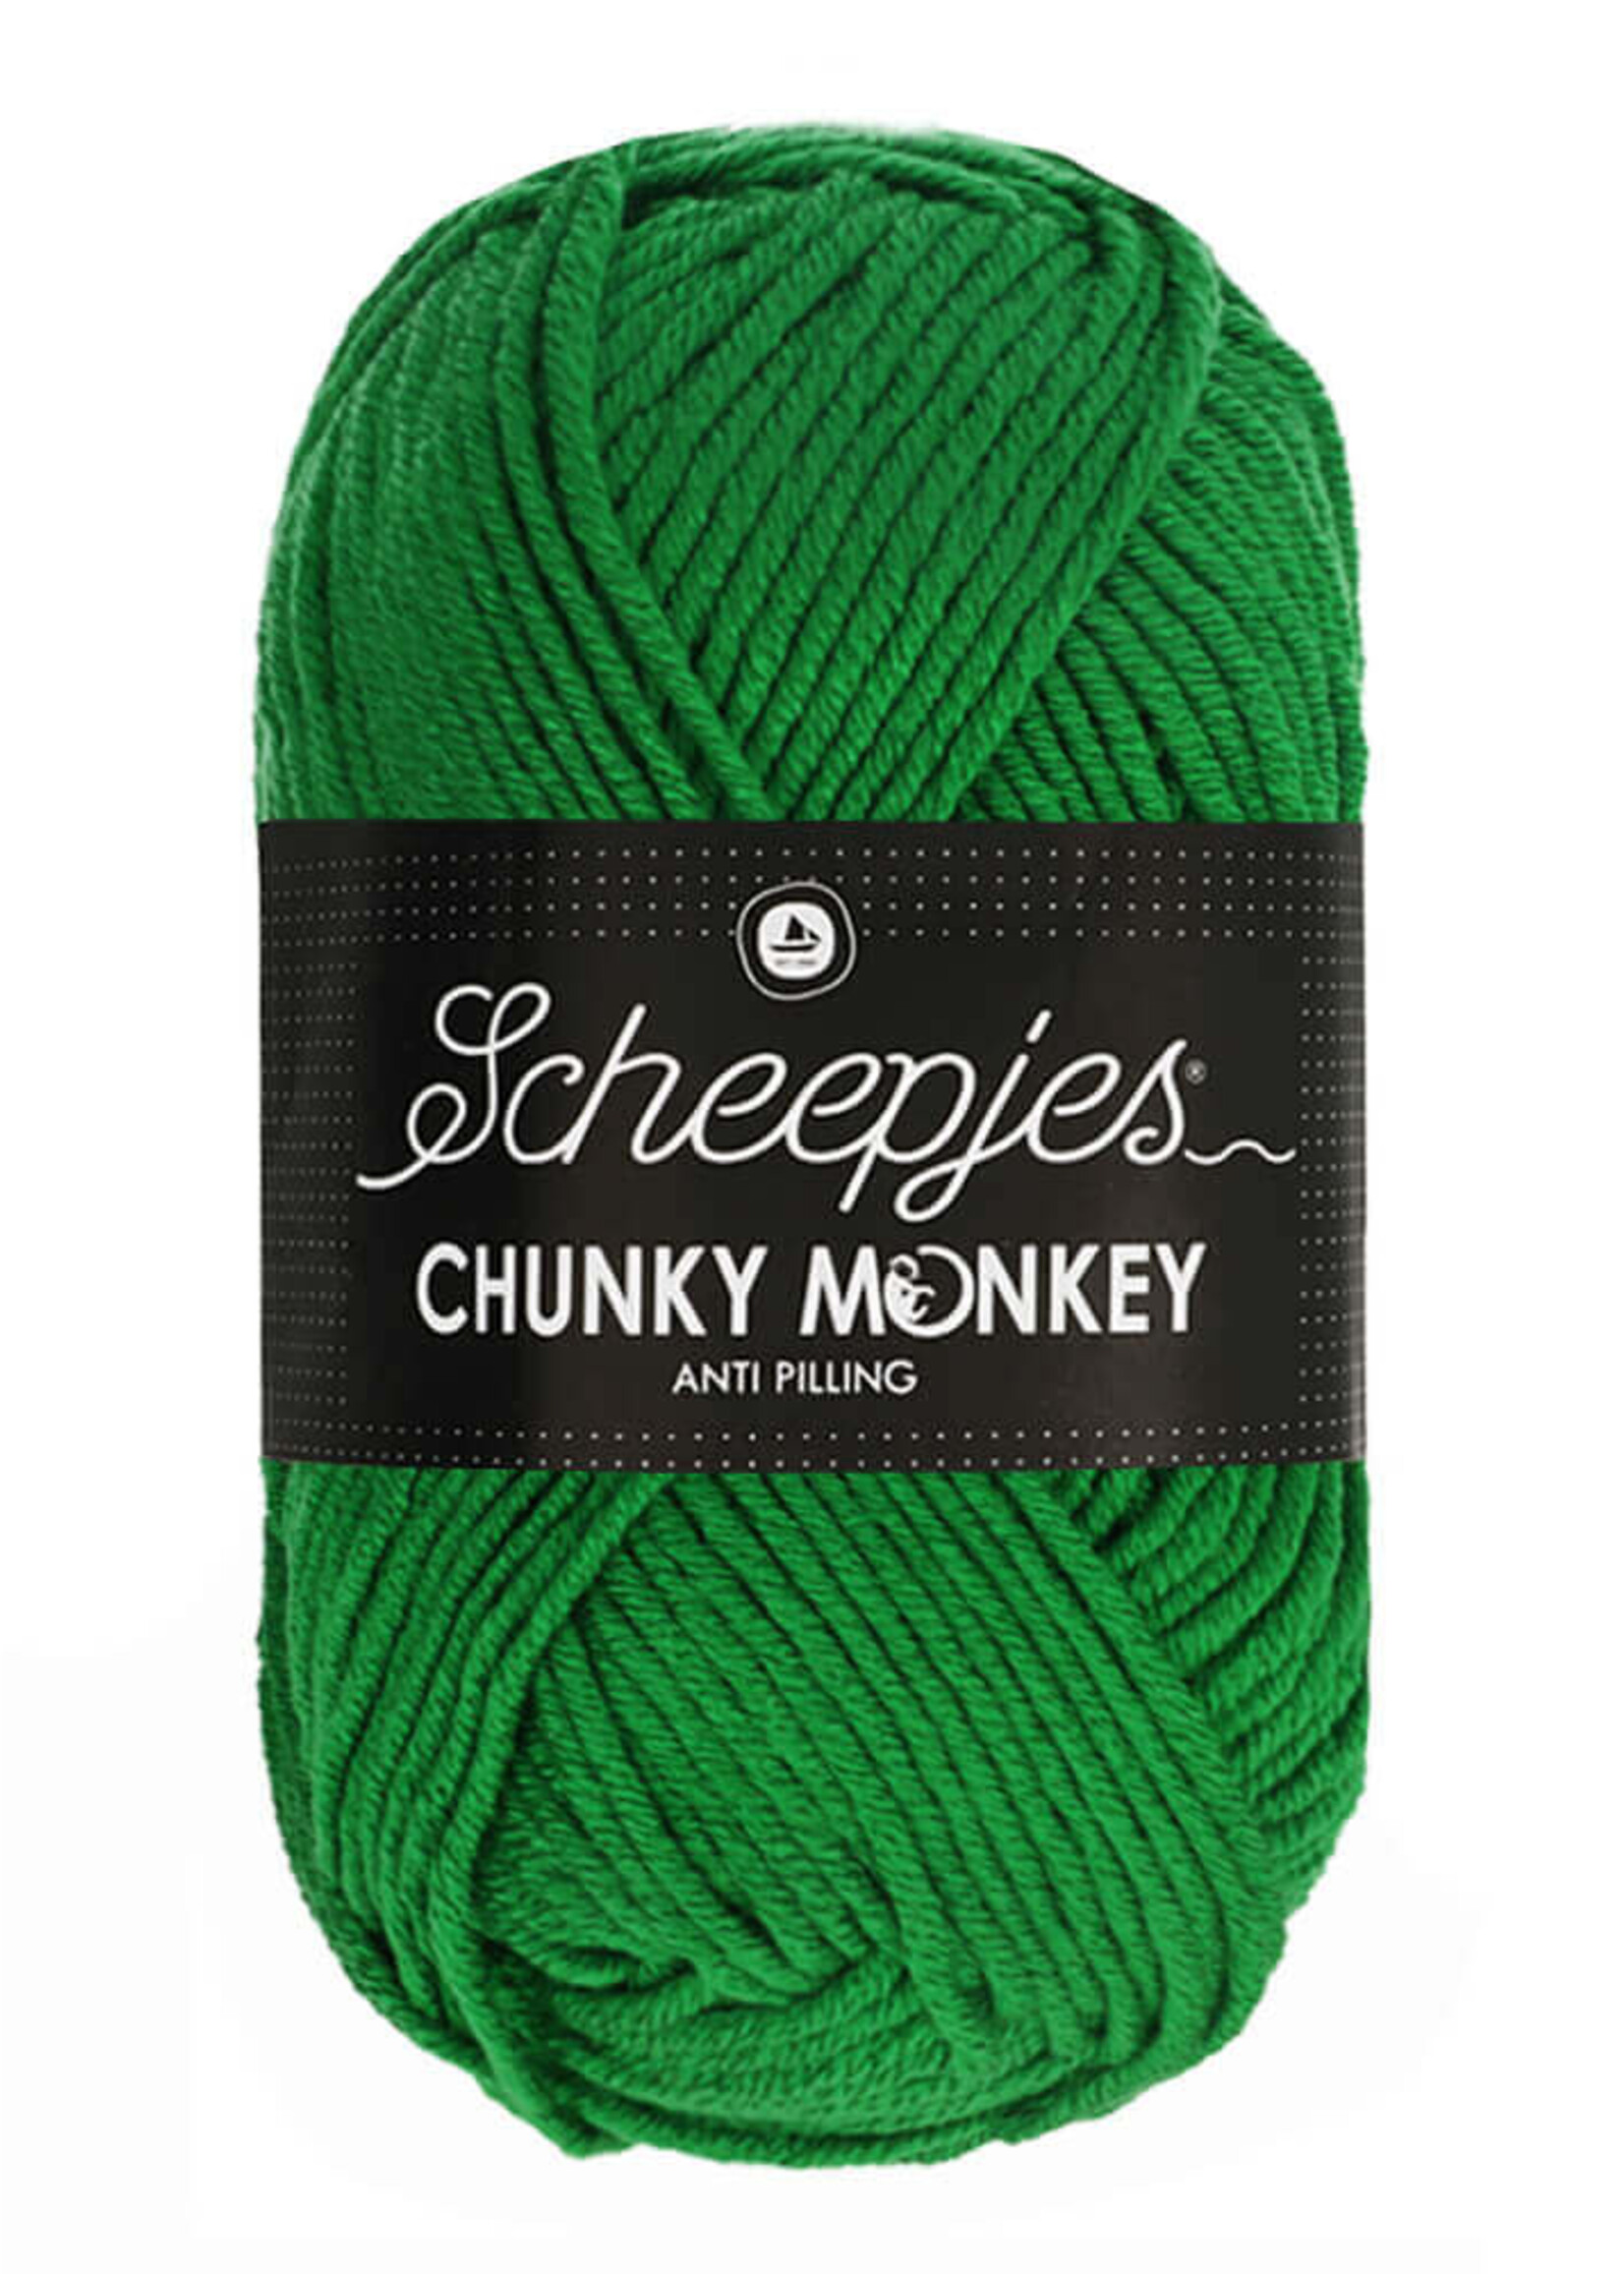 Scheepjes Chunky Monkey - Scheepjes -1826 Shamrock